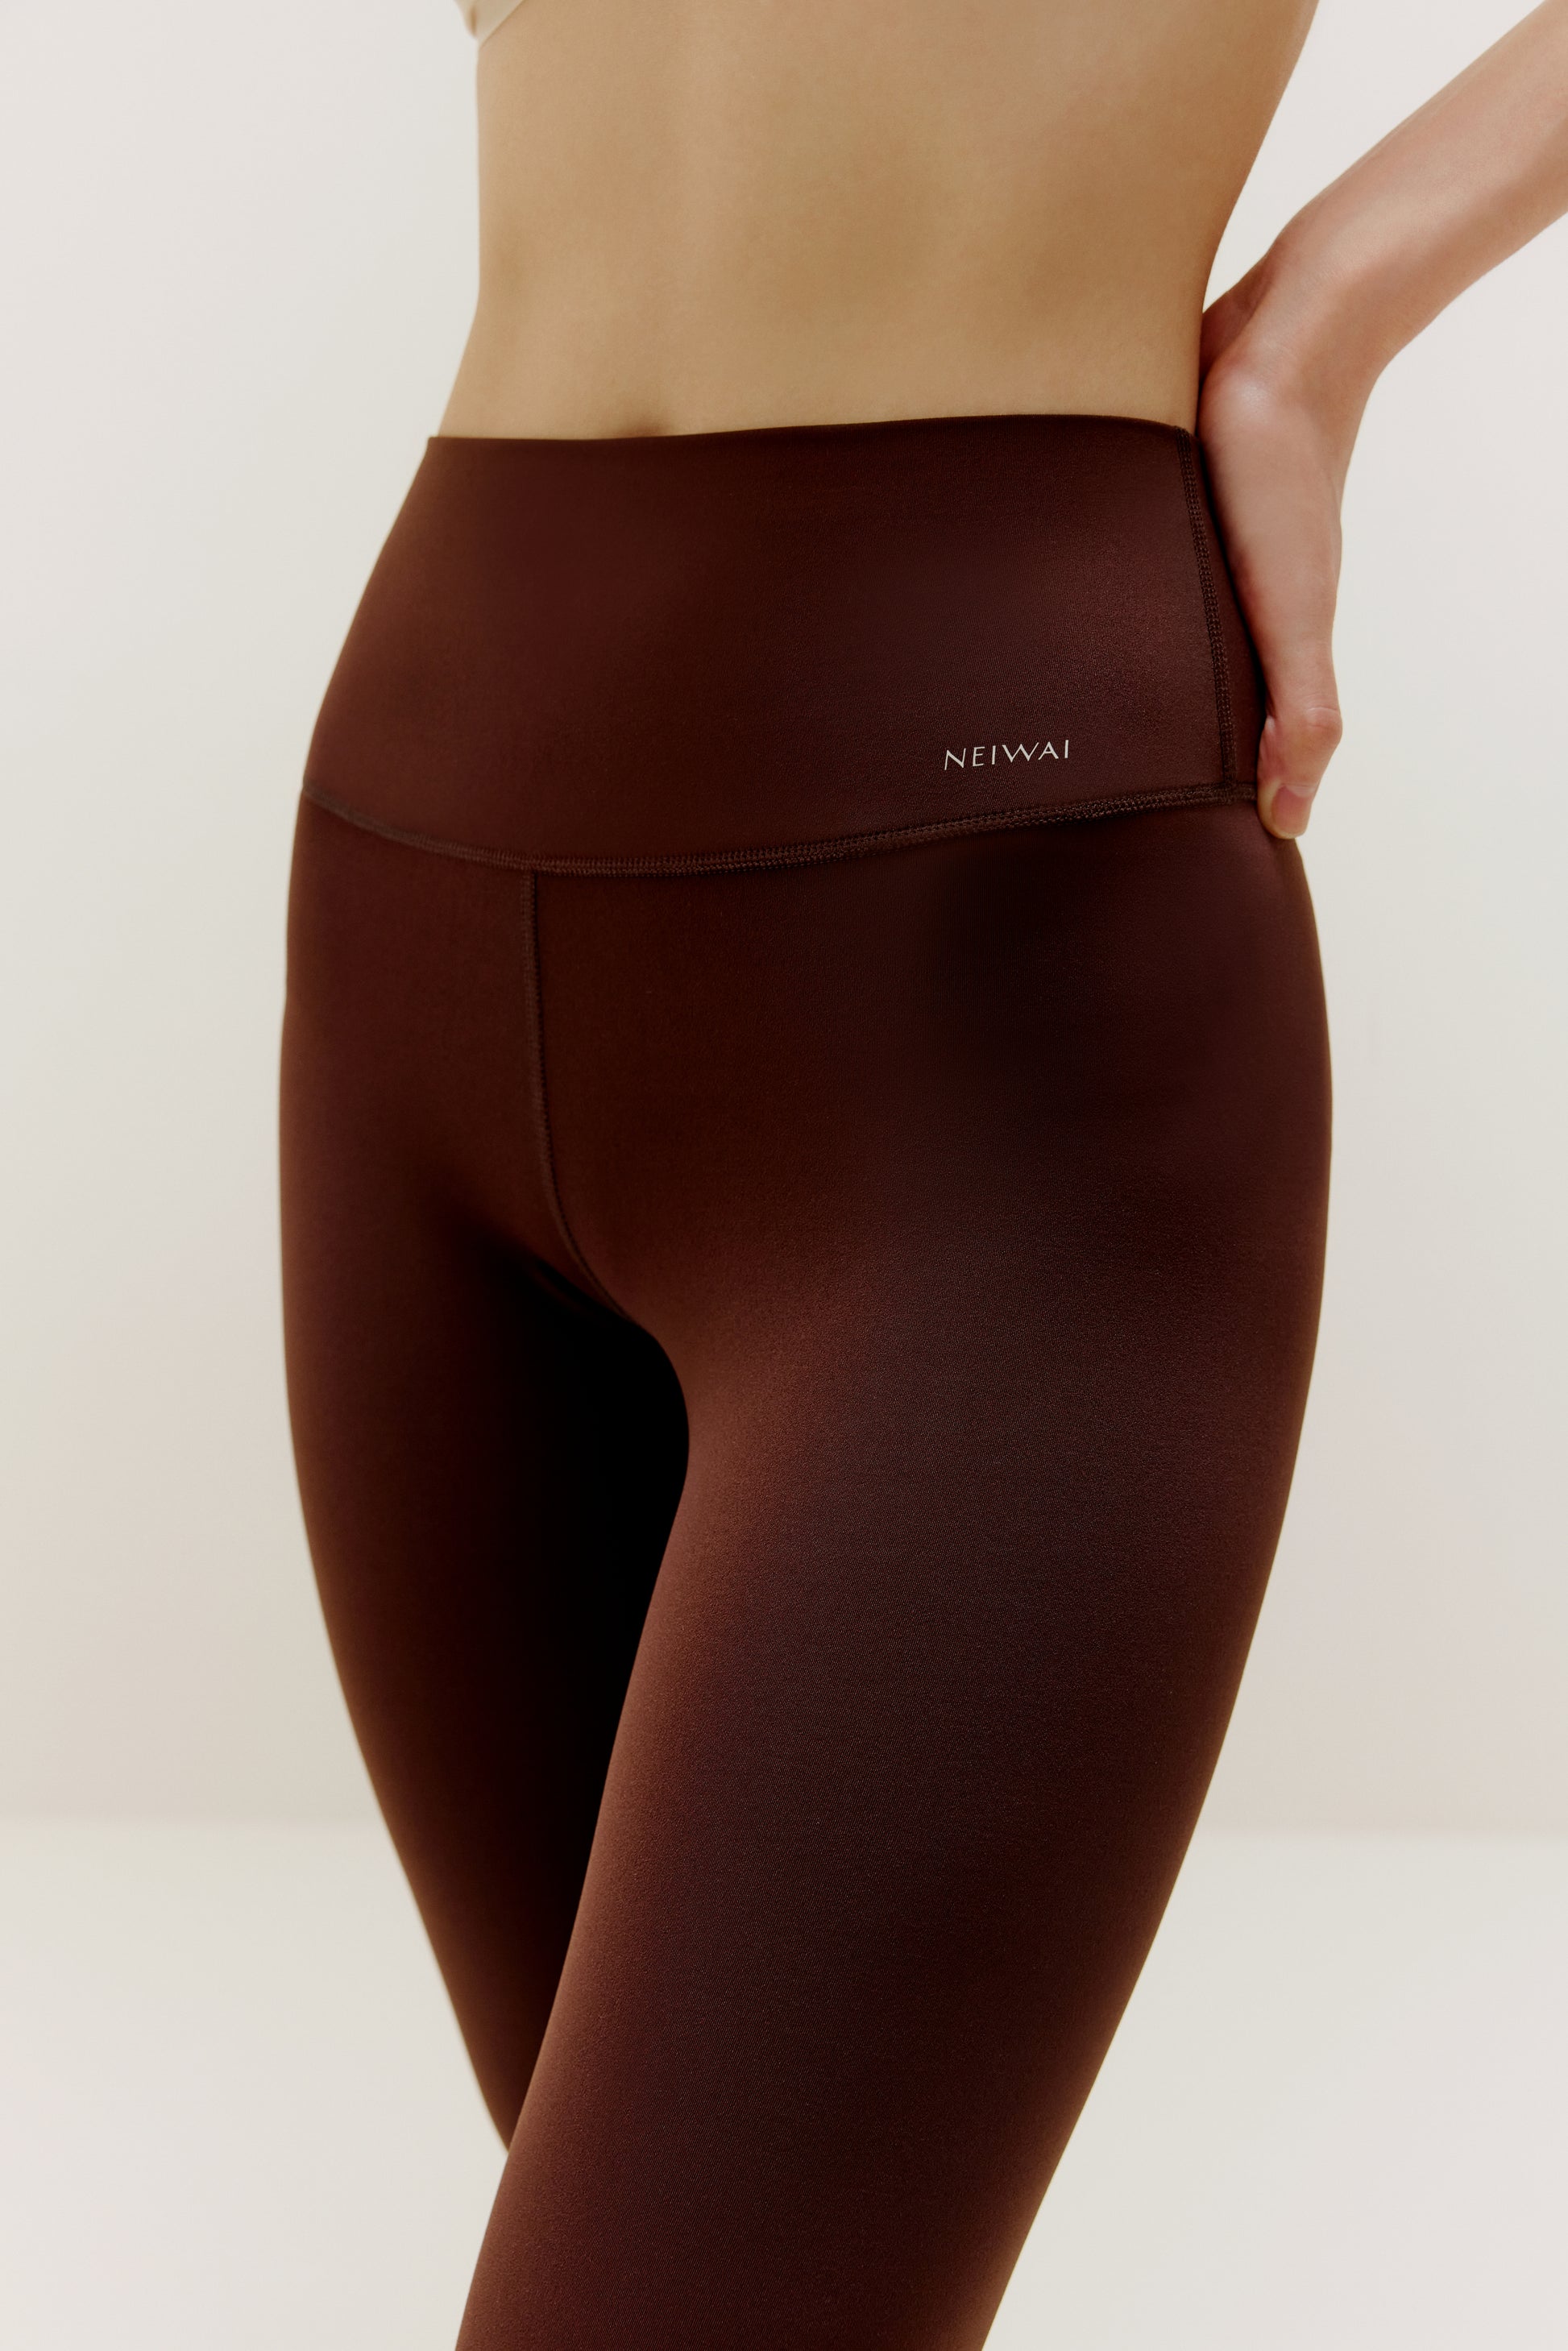 High waist thermal leggings in dark brown, 4.99€